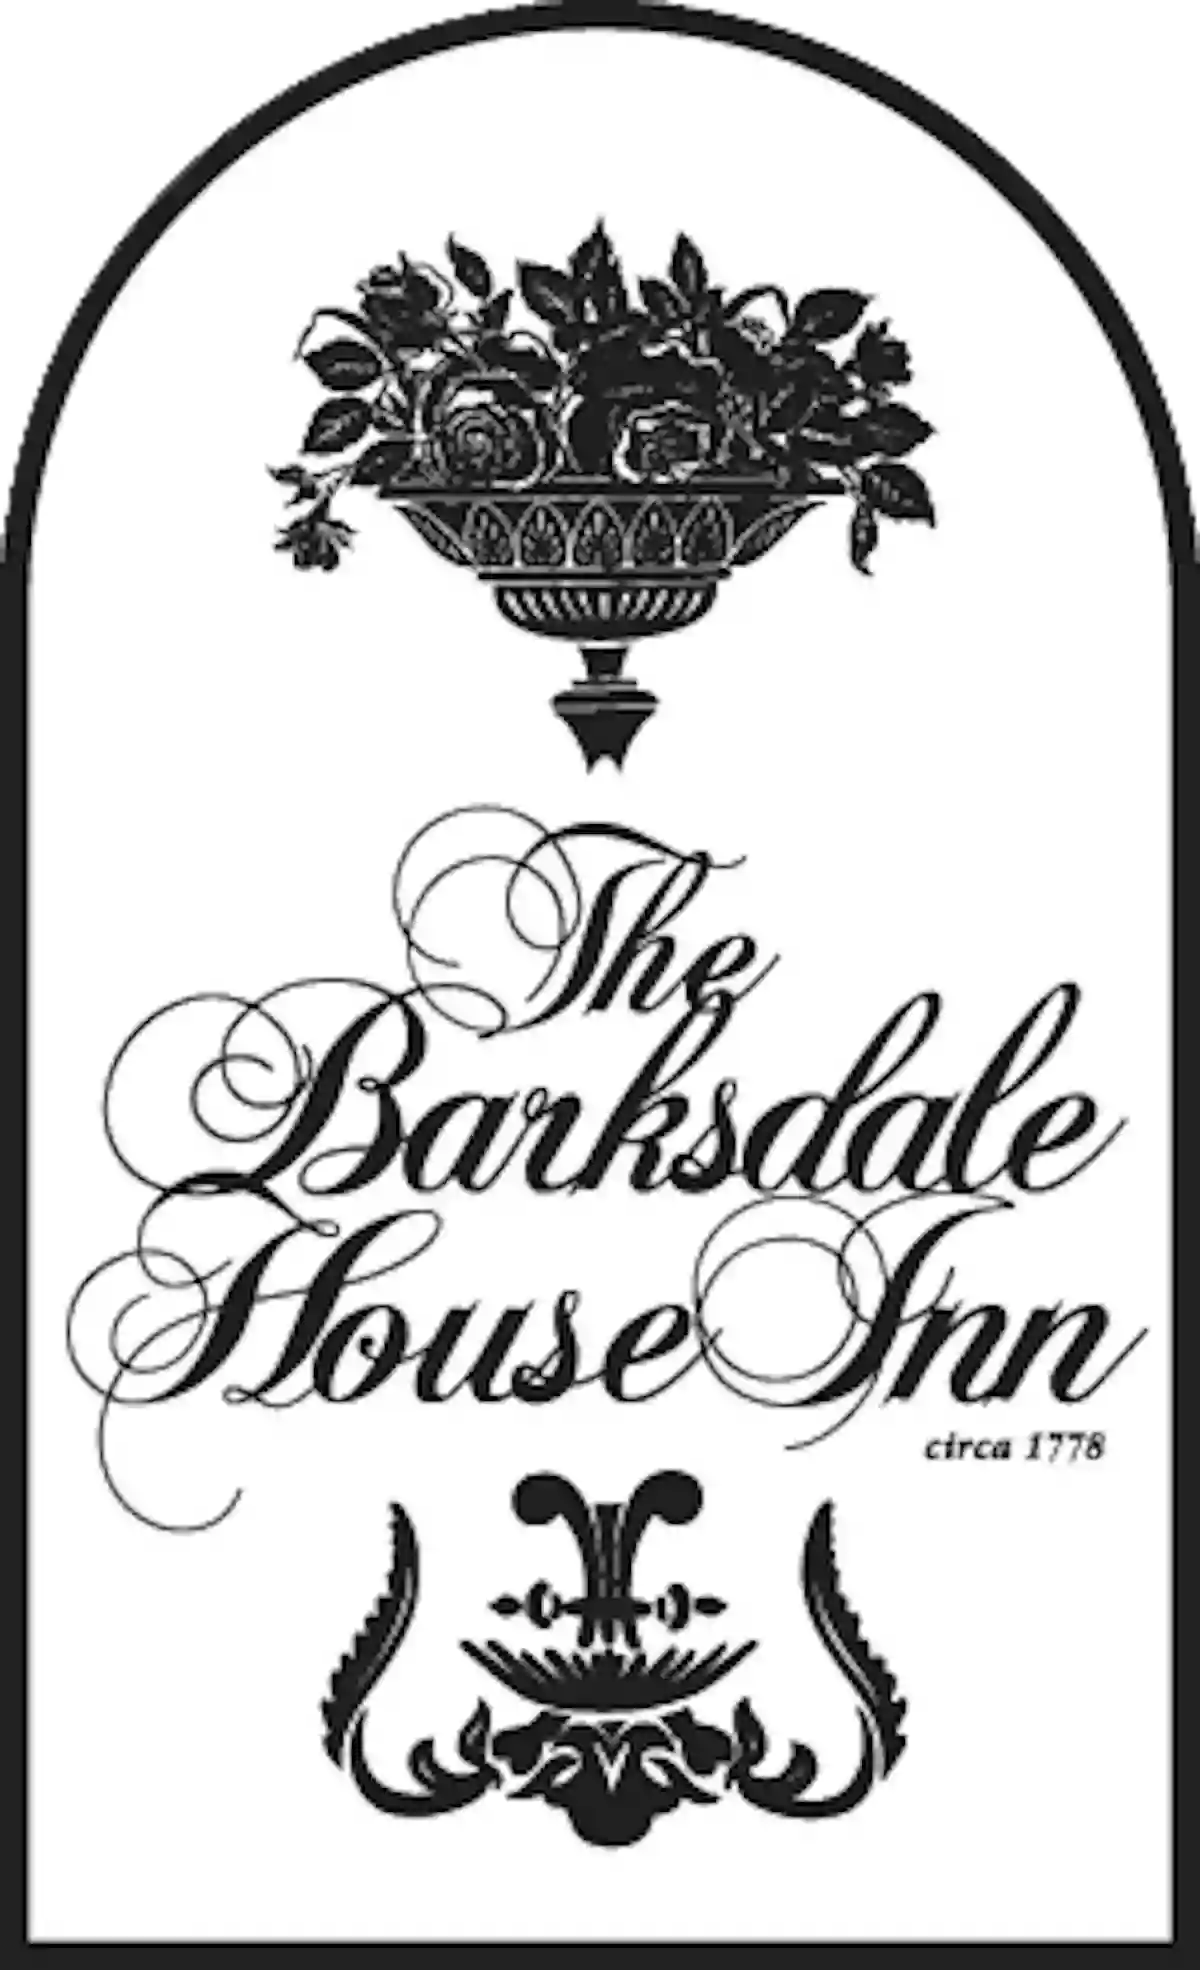 The Barksdale House Inn